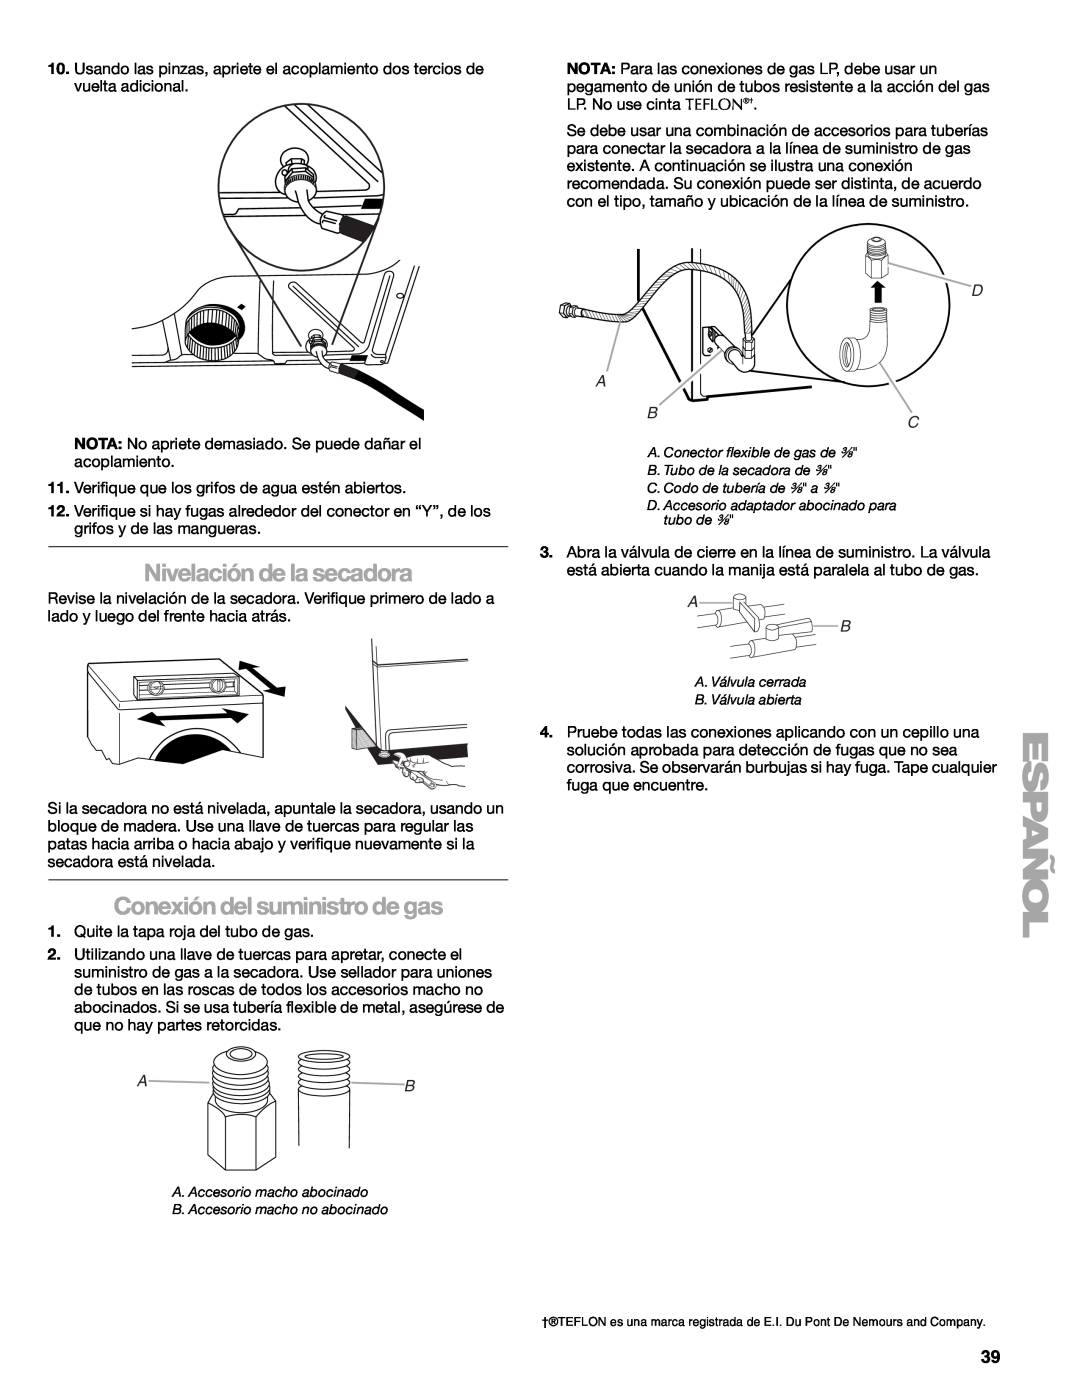 Suunto 110.9772 manual Nivelación de la secadora, Conexión del suministro de gas, C. Codo de tubería de ³⁄₈ a ³⁄₈ 